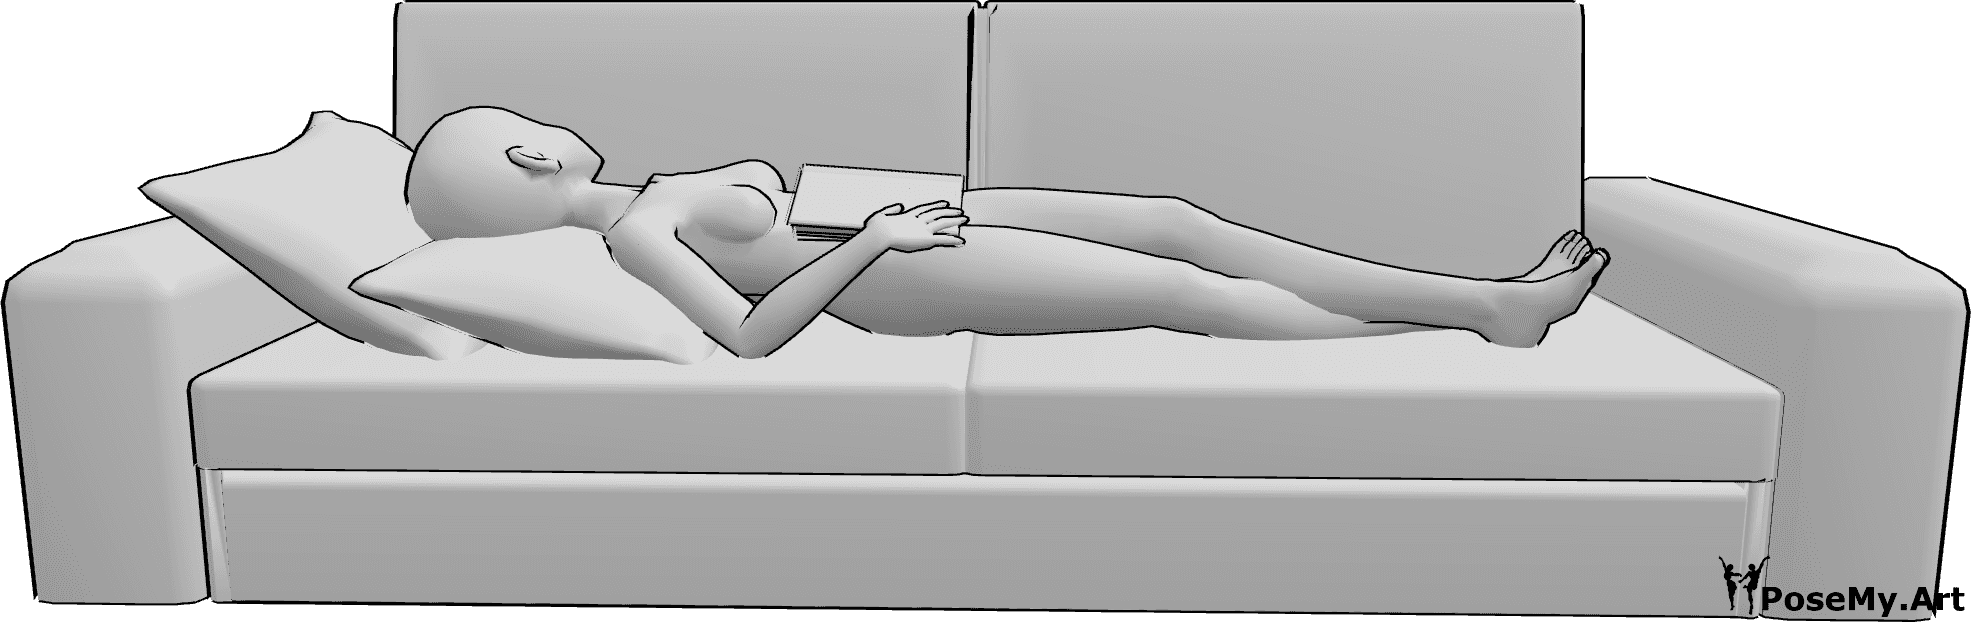 Referencia de poses- Postura para dormir leyendo anime - Mujer anime está tumbada de espaldas en el sofá y sostiene un libro mientras duerme